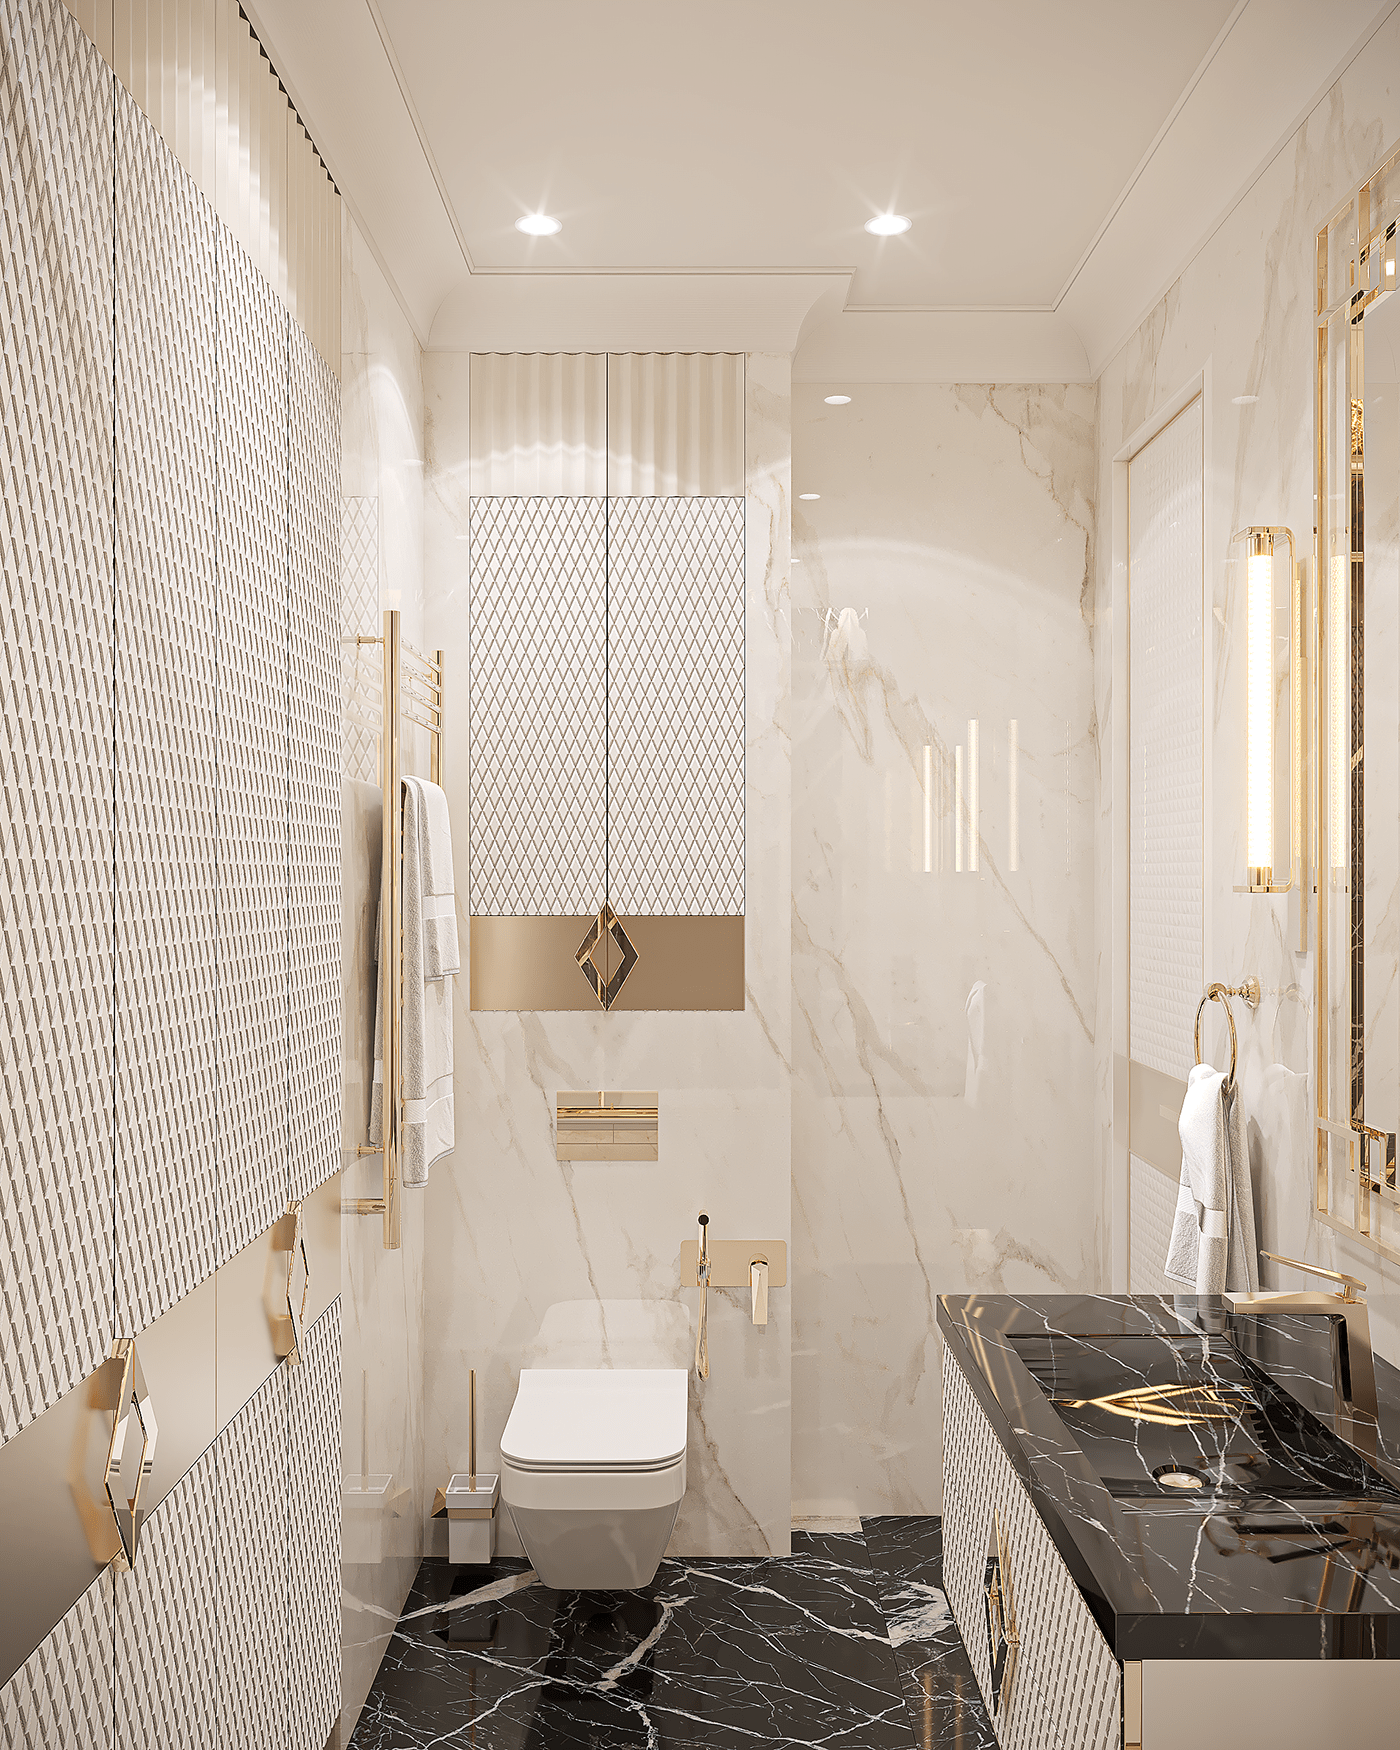 interior design  architectural design Interior Design Dubai Luxury Design Interior living room apartment bathroom design neoclassic interior дизайн интерьера москва